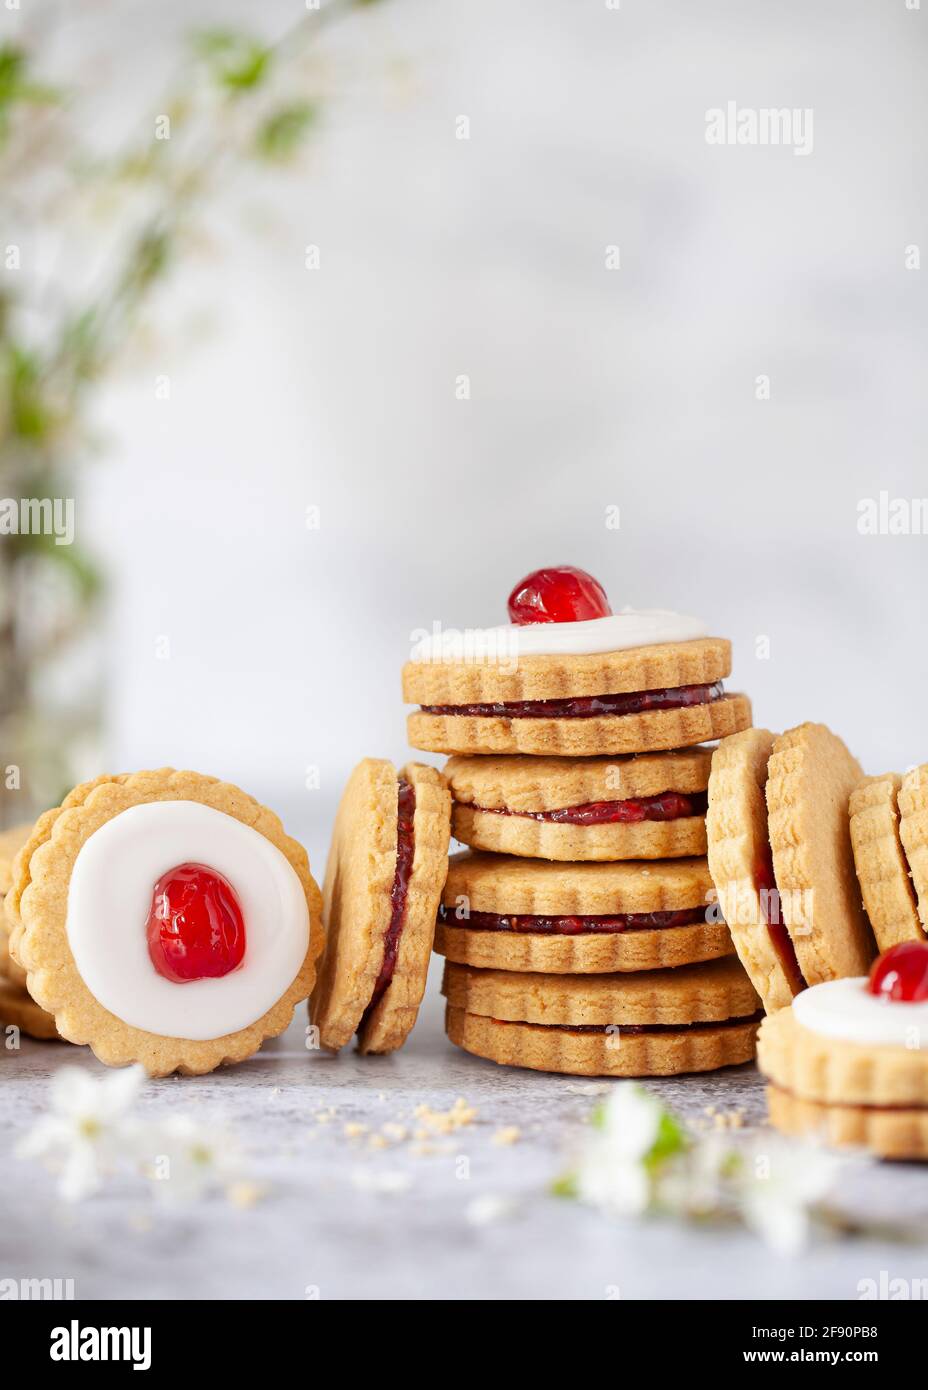 Mit Marmelade gefüllte Shortbread-Kekse stapeln sich, einige mit Glasur und einer Kirsche auf der Oberseite, um Empire-Kekse zu bilden Stockfoto